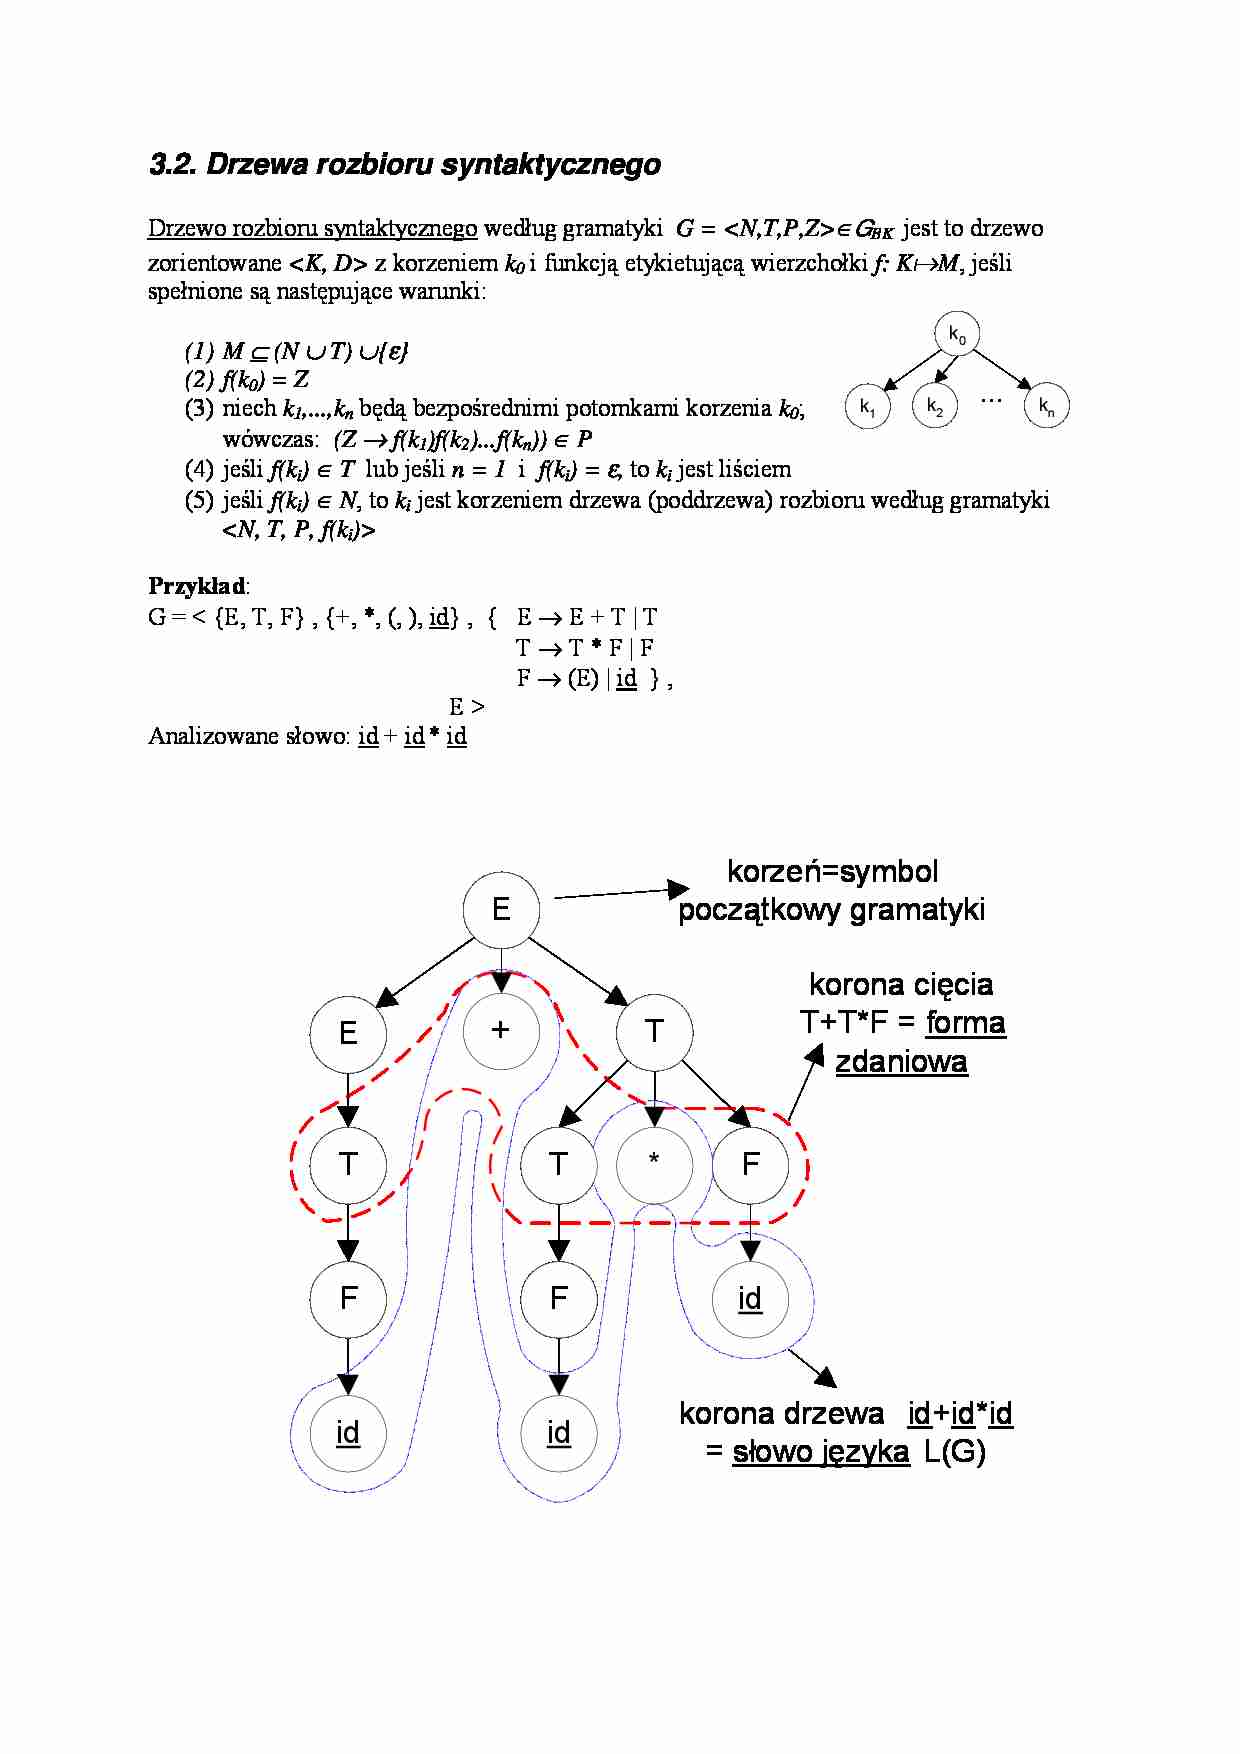 Drzewa rozbioru syntaktycznego - wykład - strona 1